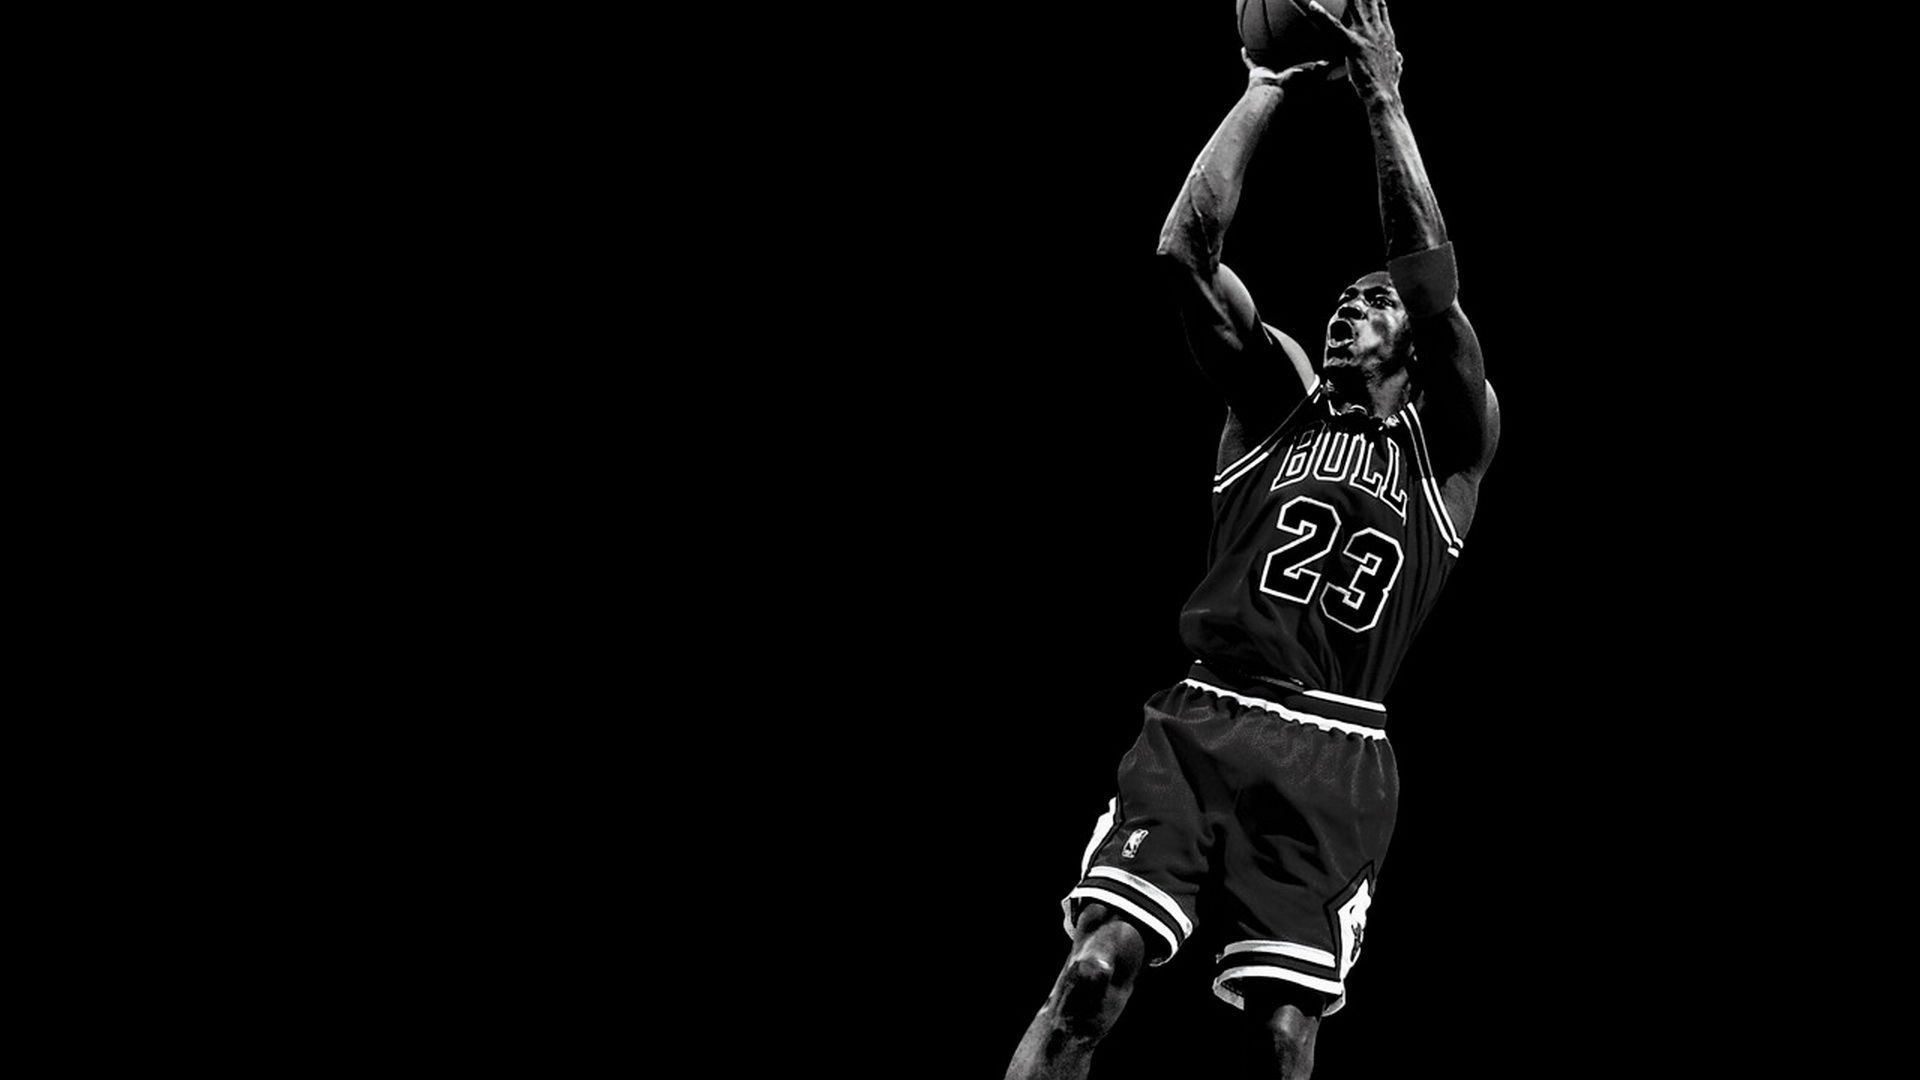 1920x1080 Images Of Michael Jordan